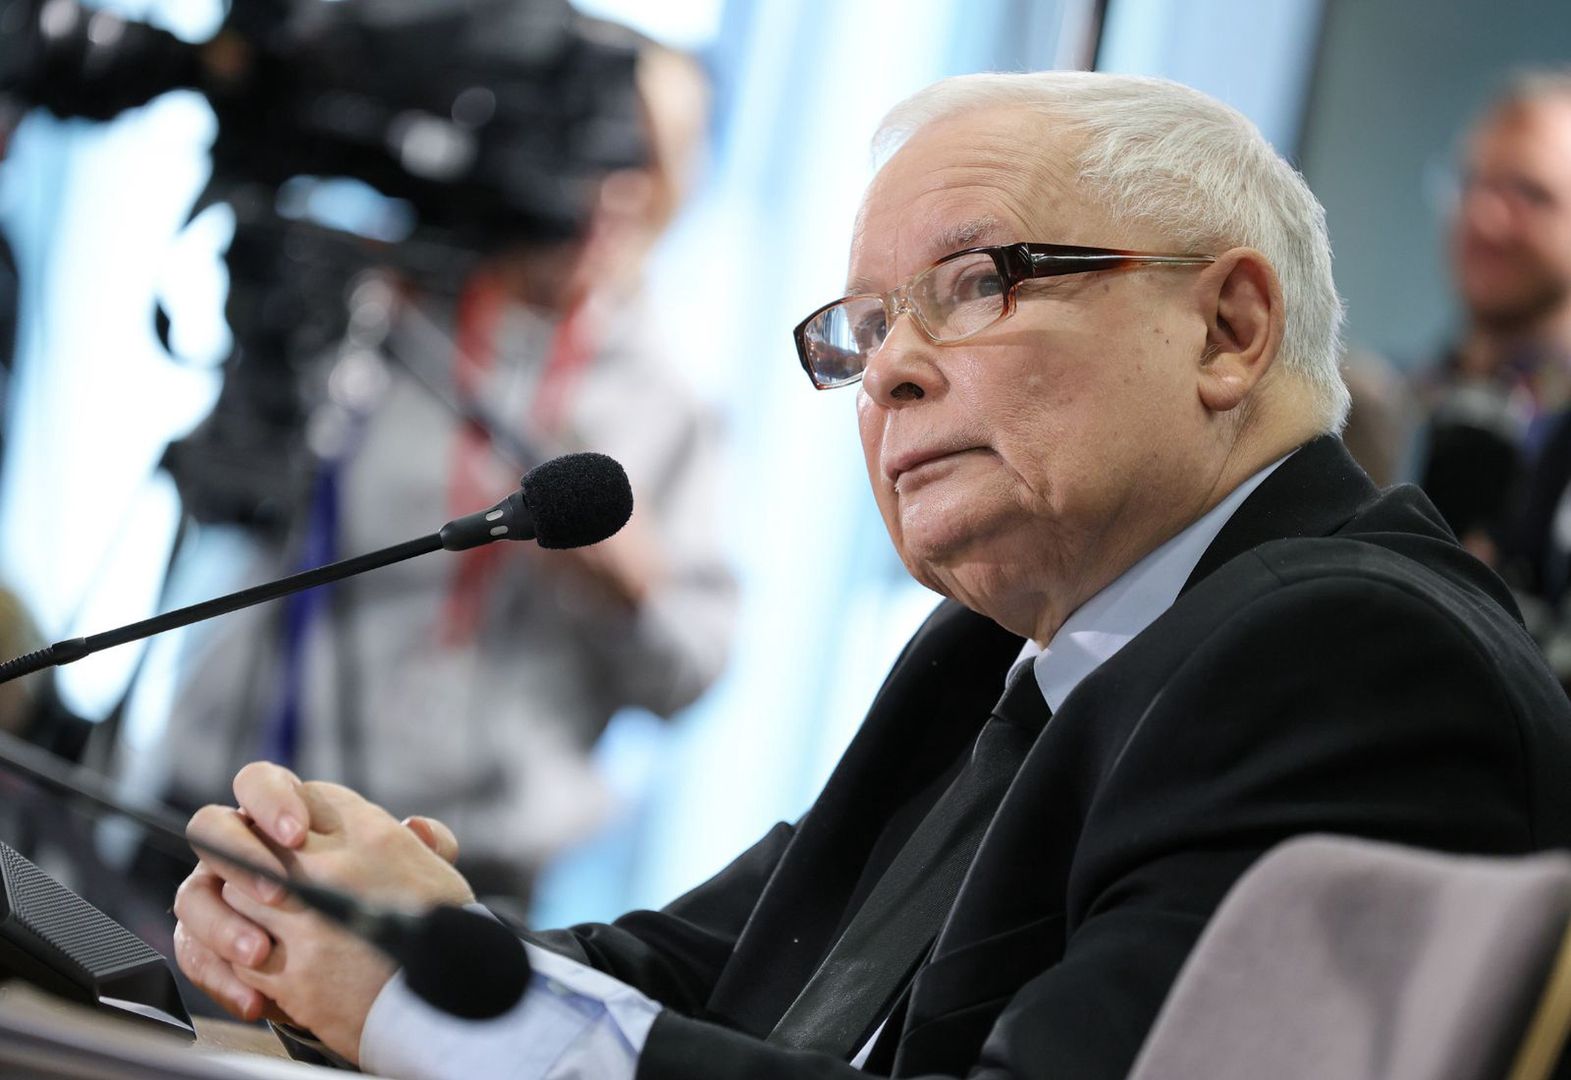 Zobaczył Kaczyńskiego w Sejmie. "To świadczy o nim bardzo źle"